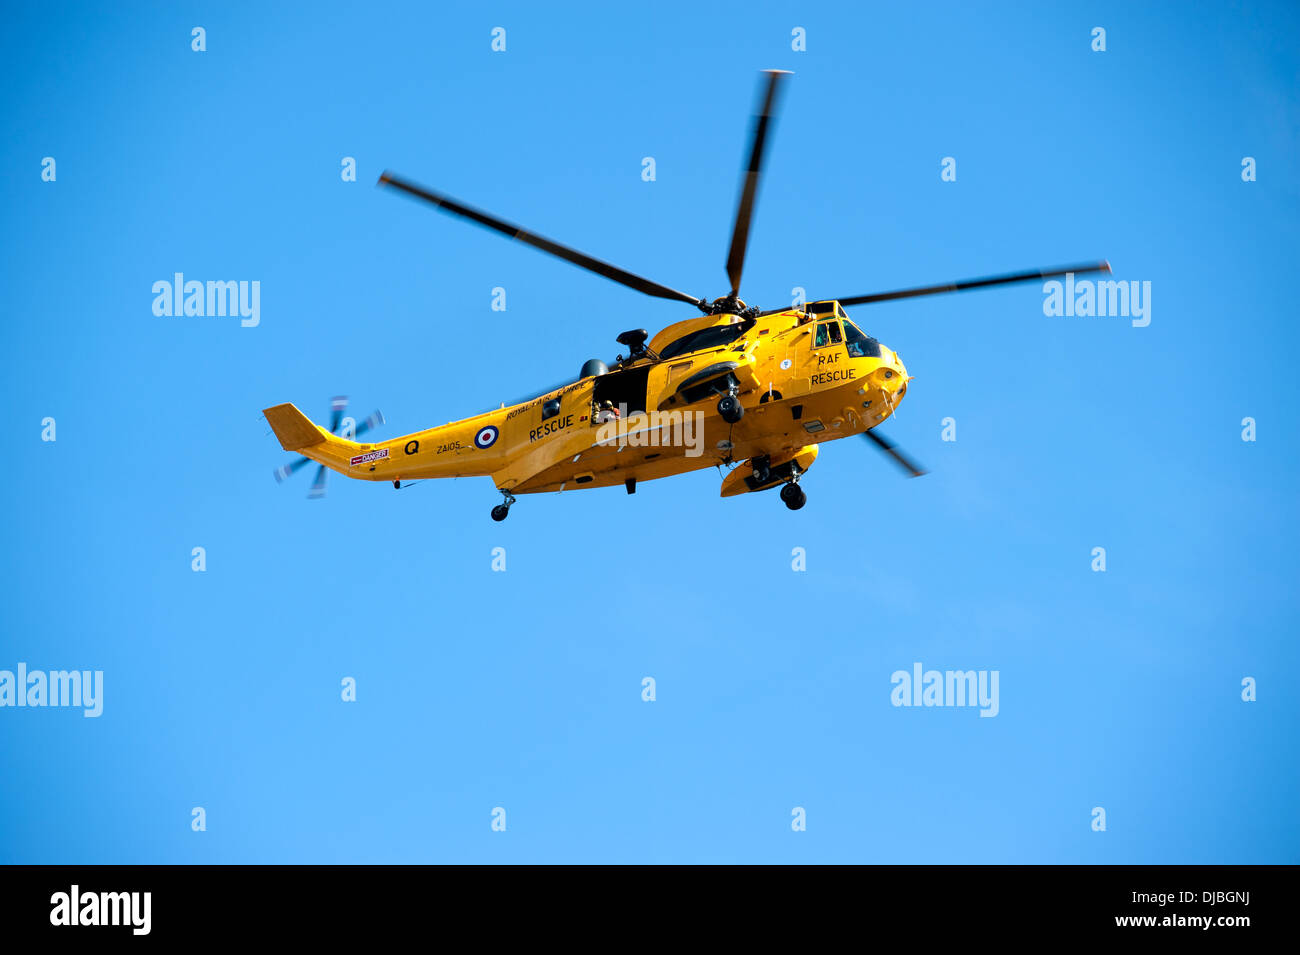 RAF Seaking Mar aire helicóptero de rescate de la Royal Air Force Foto de stock